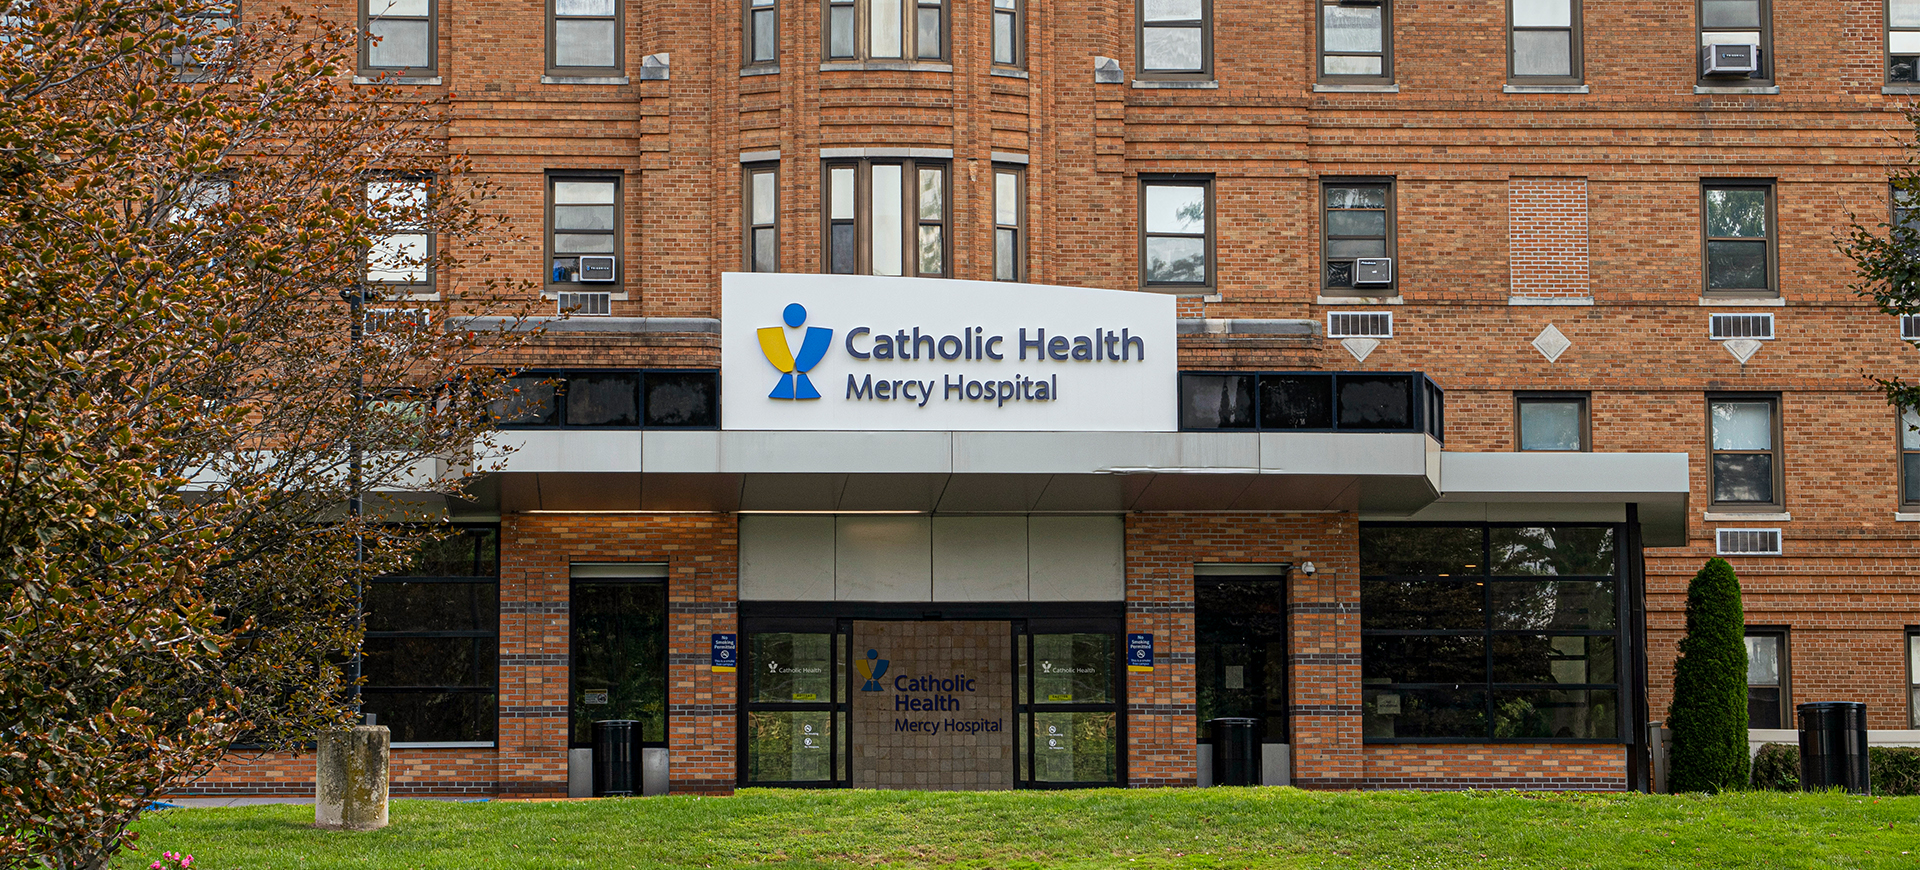       	        
	  	  St. Francis Heart Center at Mercy Hospital
	  	  
	        